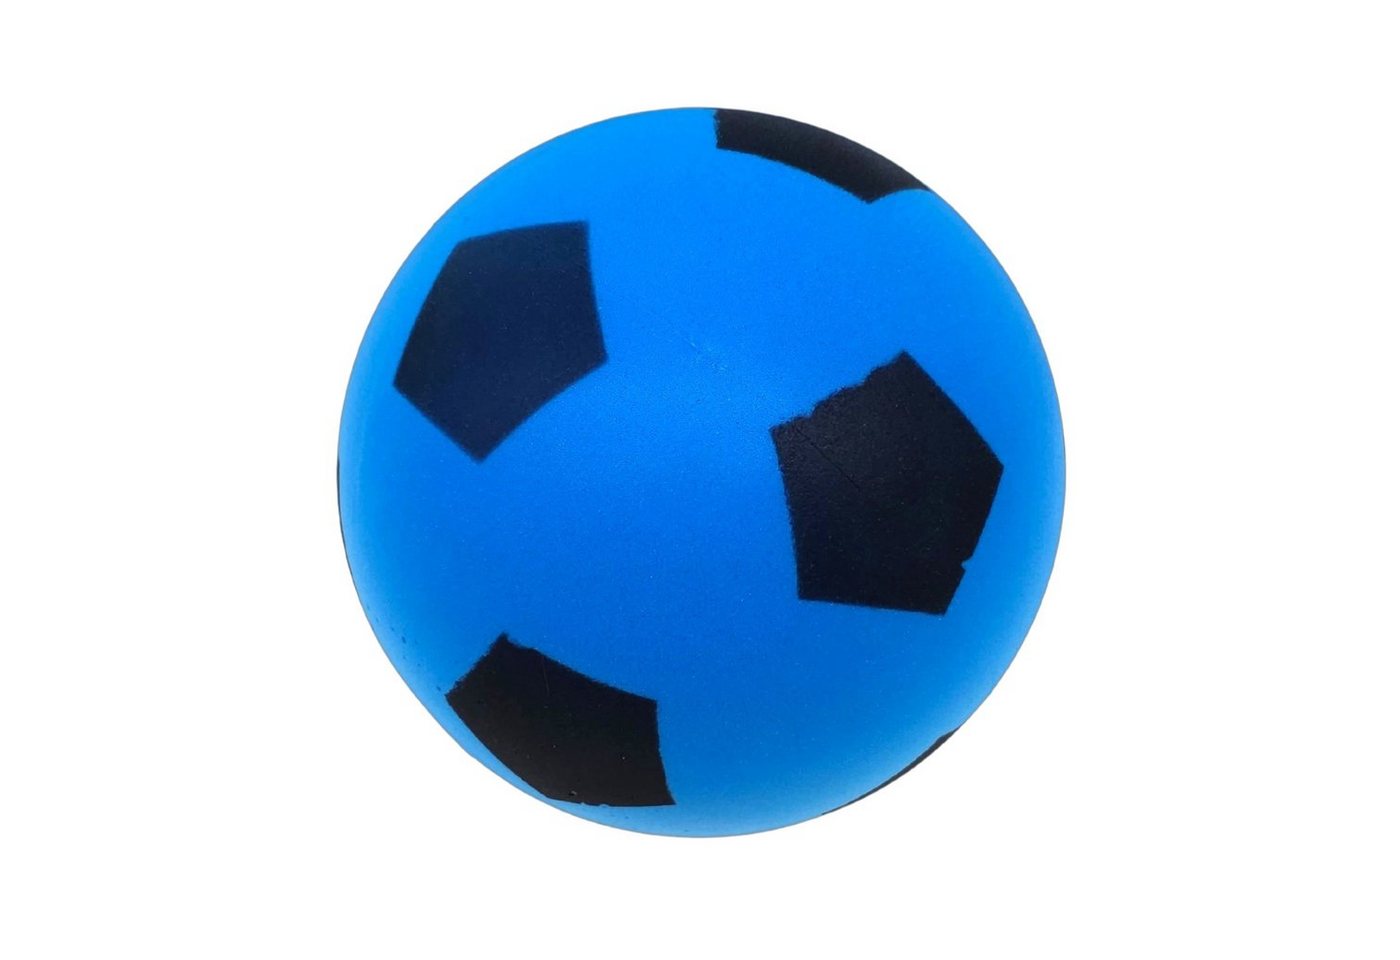 alldoro Softball 63105, Schaumstoffball blau Ø 19 cm, weicher Ball aus Schaumstoff von alldoro